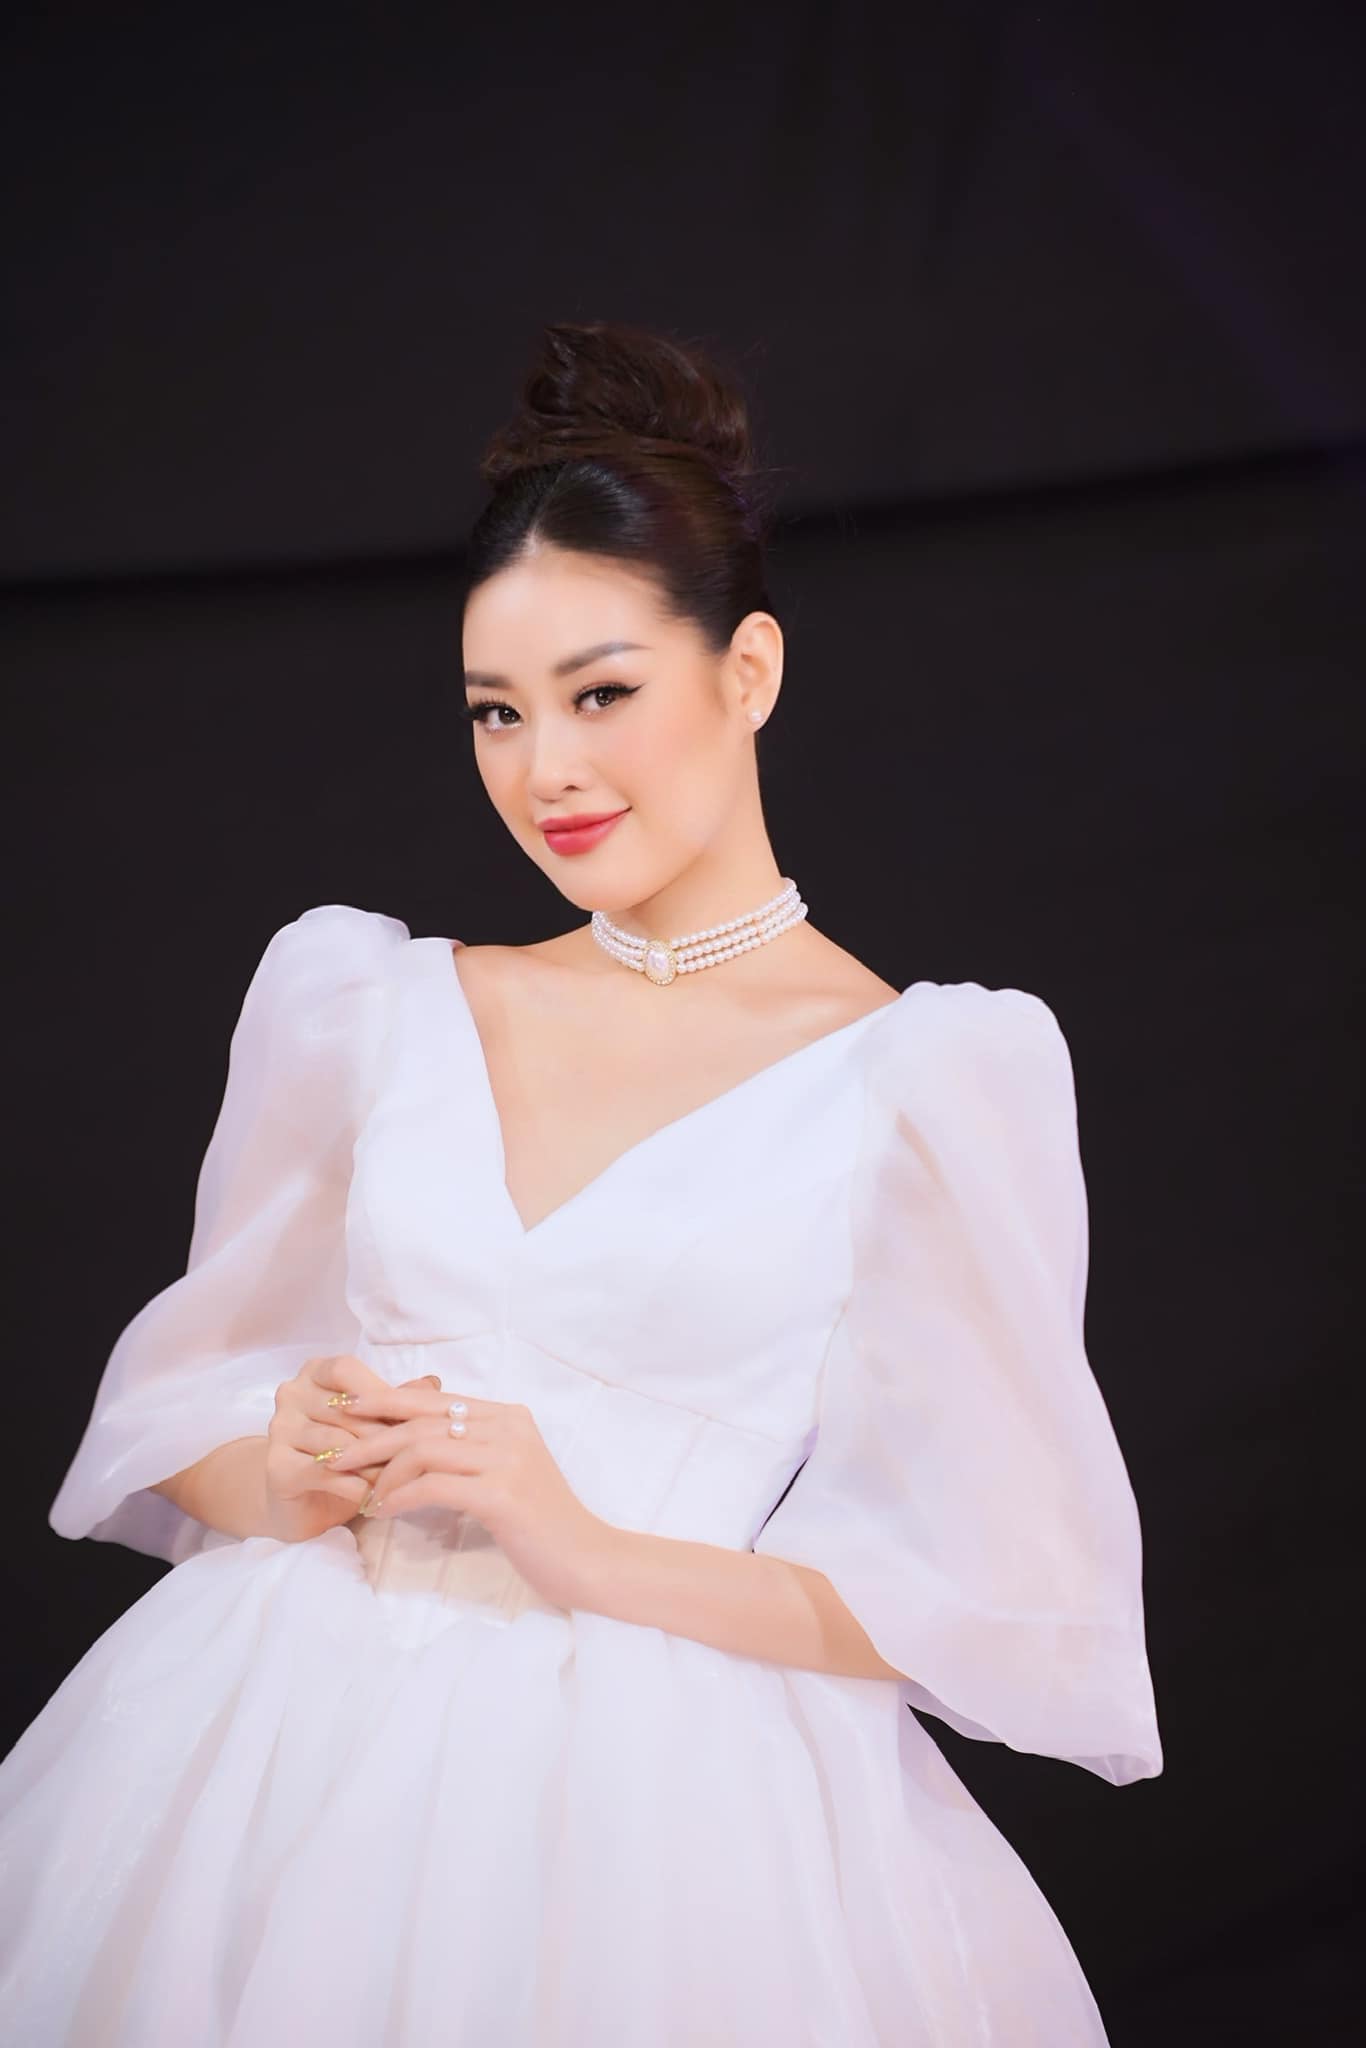 Mỹ nhân Việt lộ thông tin không thể ra trường, chuyện không chỉ của Hoa hậu Ngọc Châu - Ảnh 3.